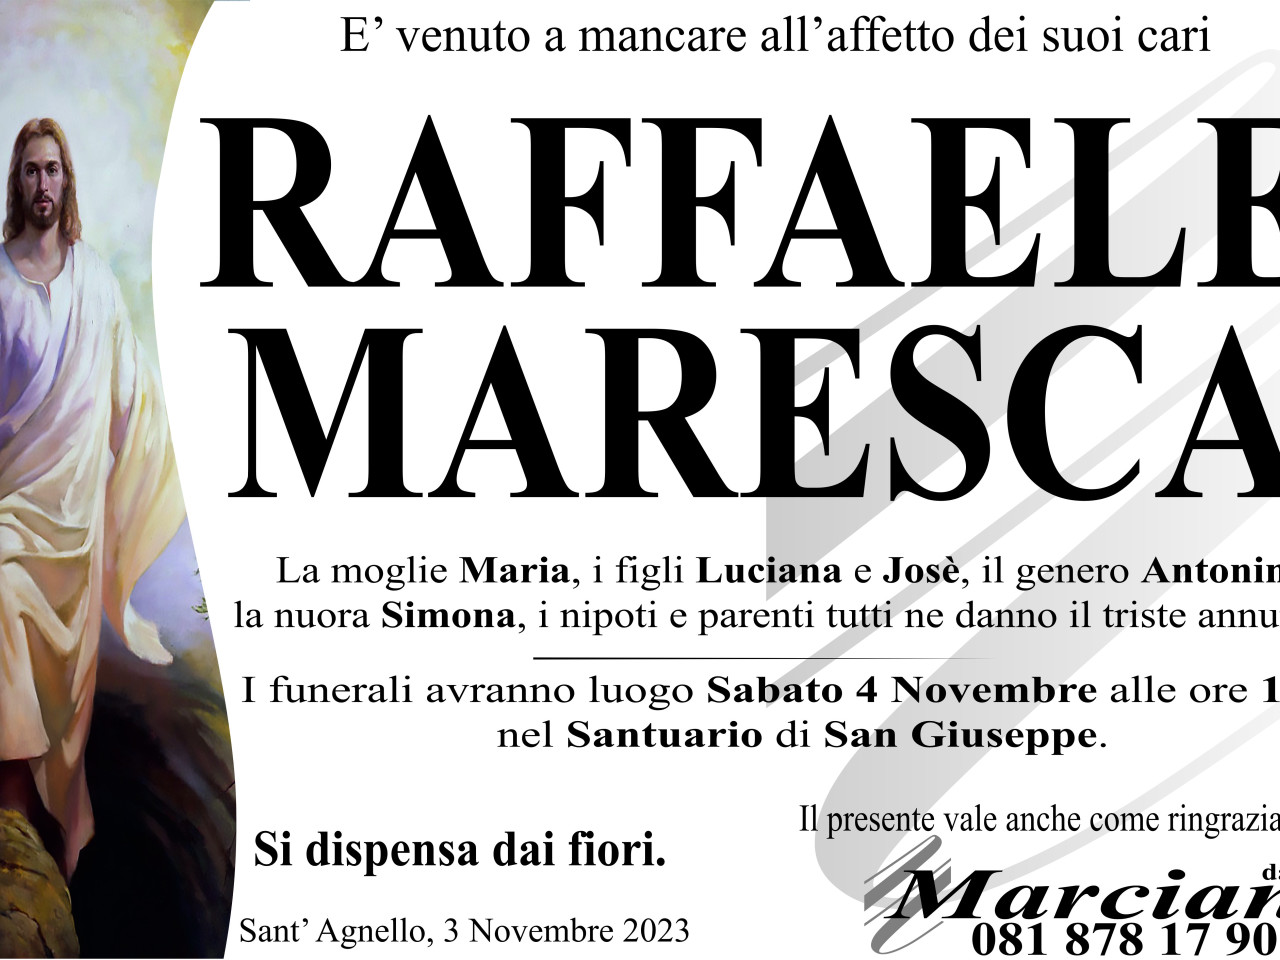 Raffaele Maresca